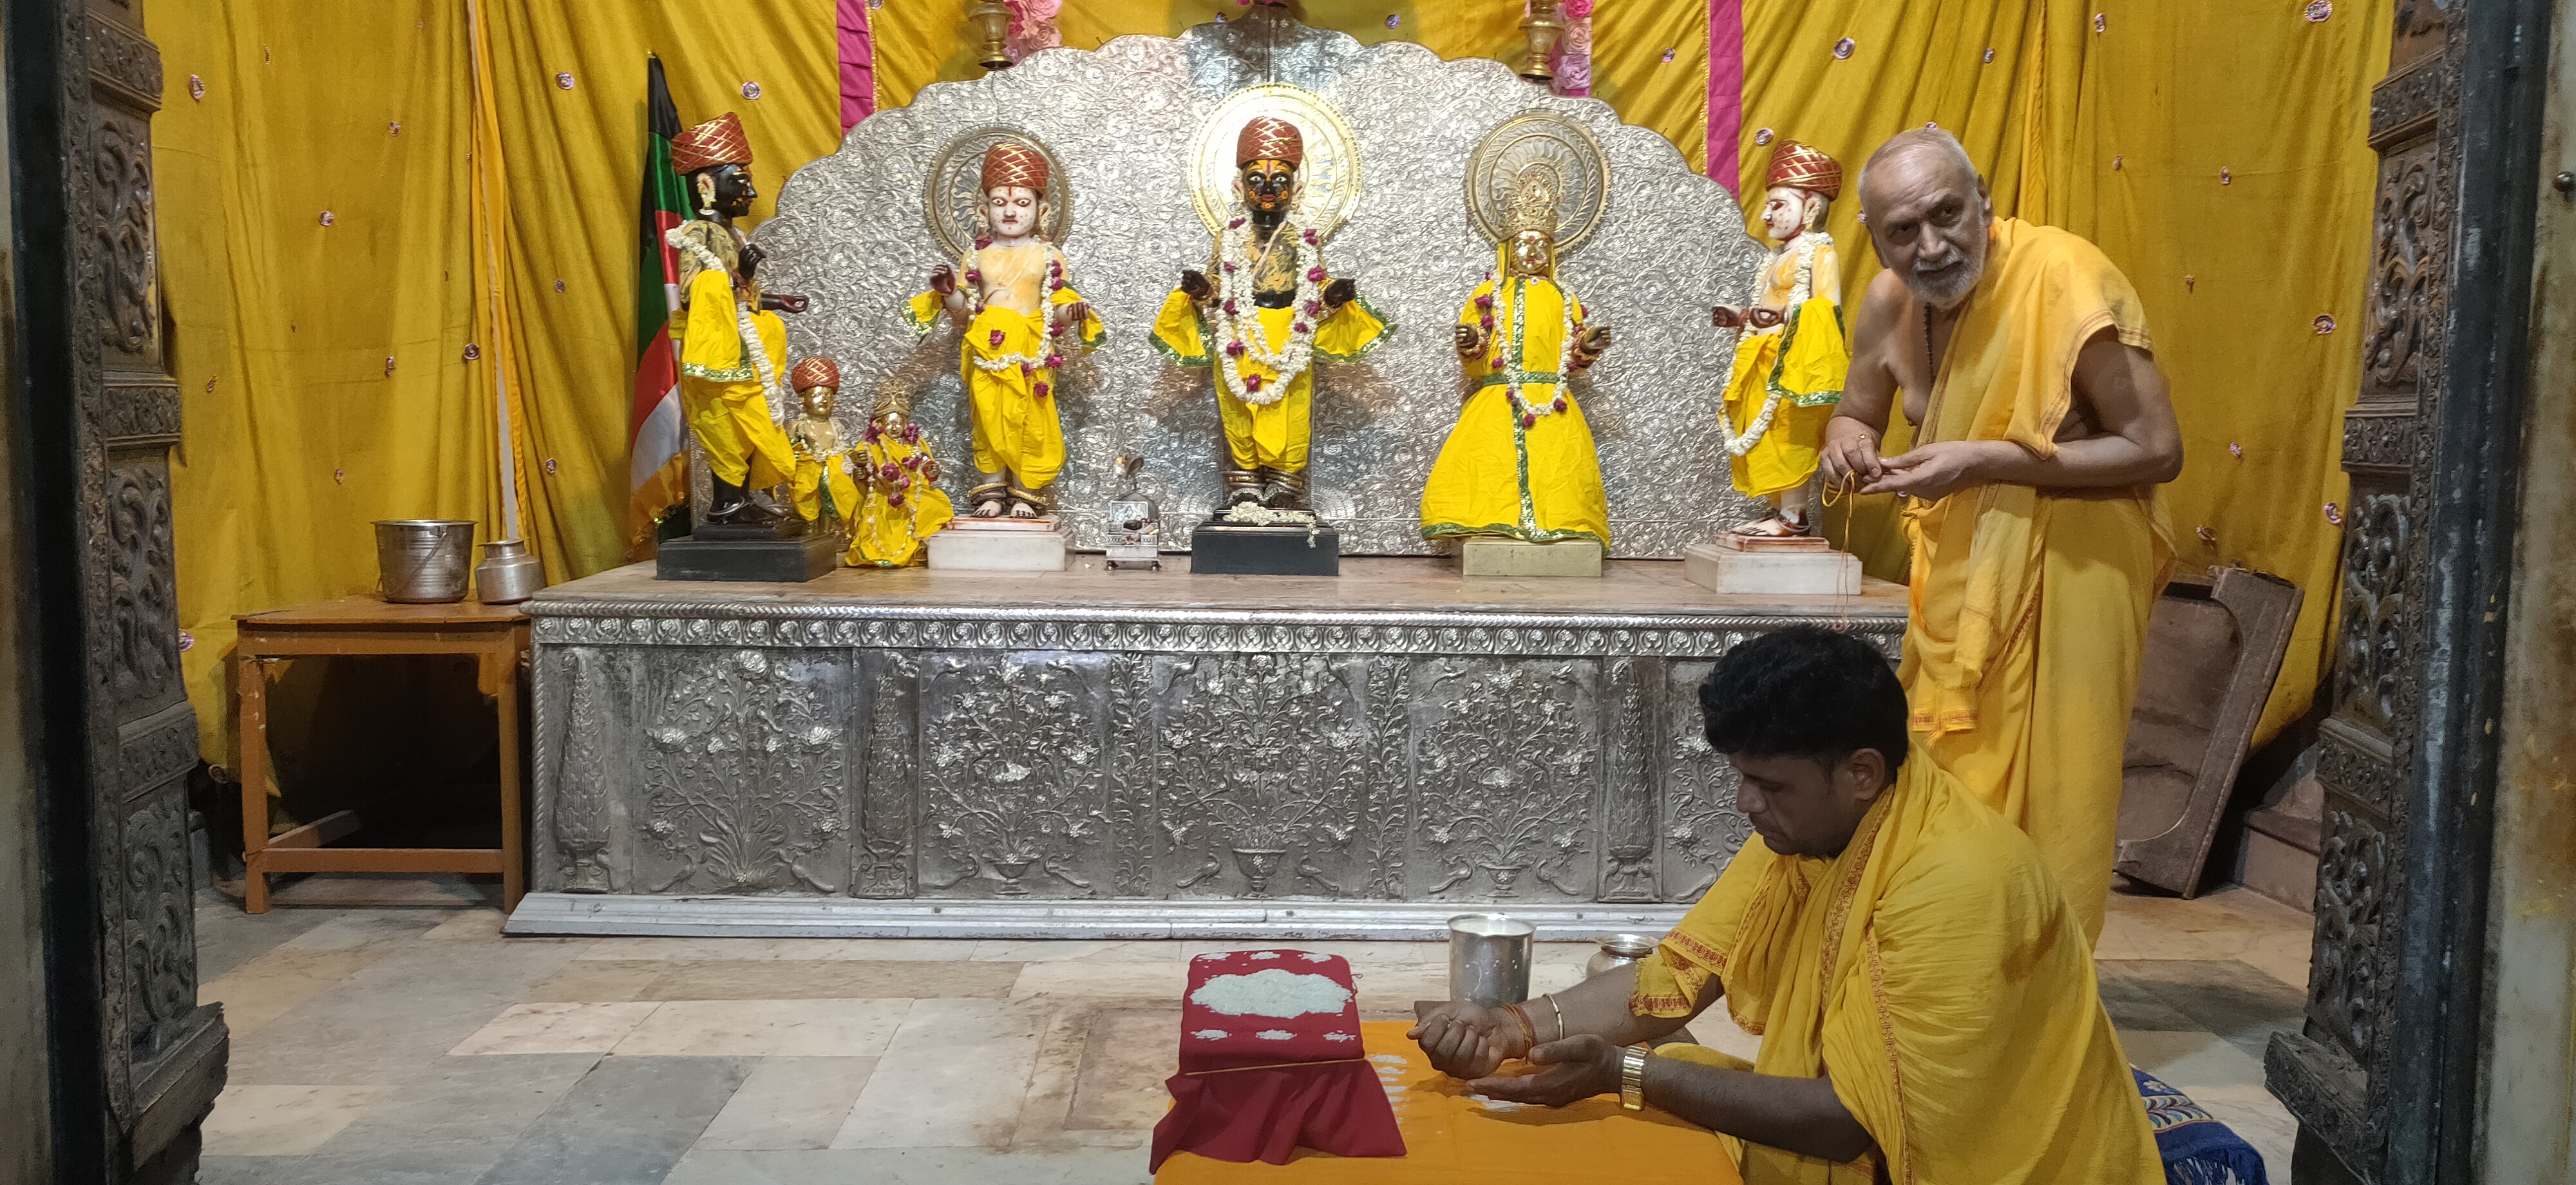 मंदिर श्री रामचंद्रजी का 130वां पाटोत्सव: राम दरबार का किया पंचामृत अभिषेक,
गूंजे वेद मंत्र